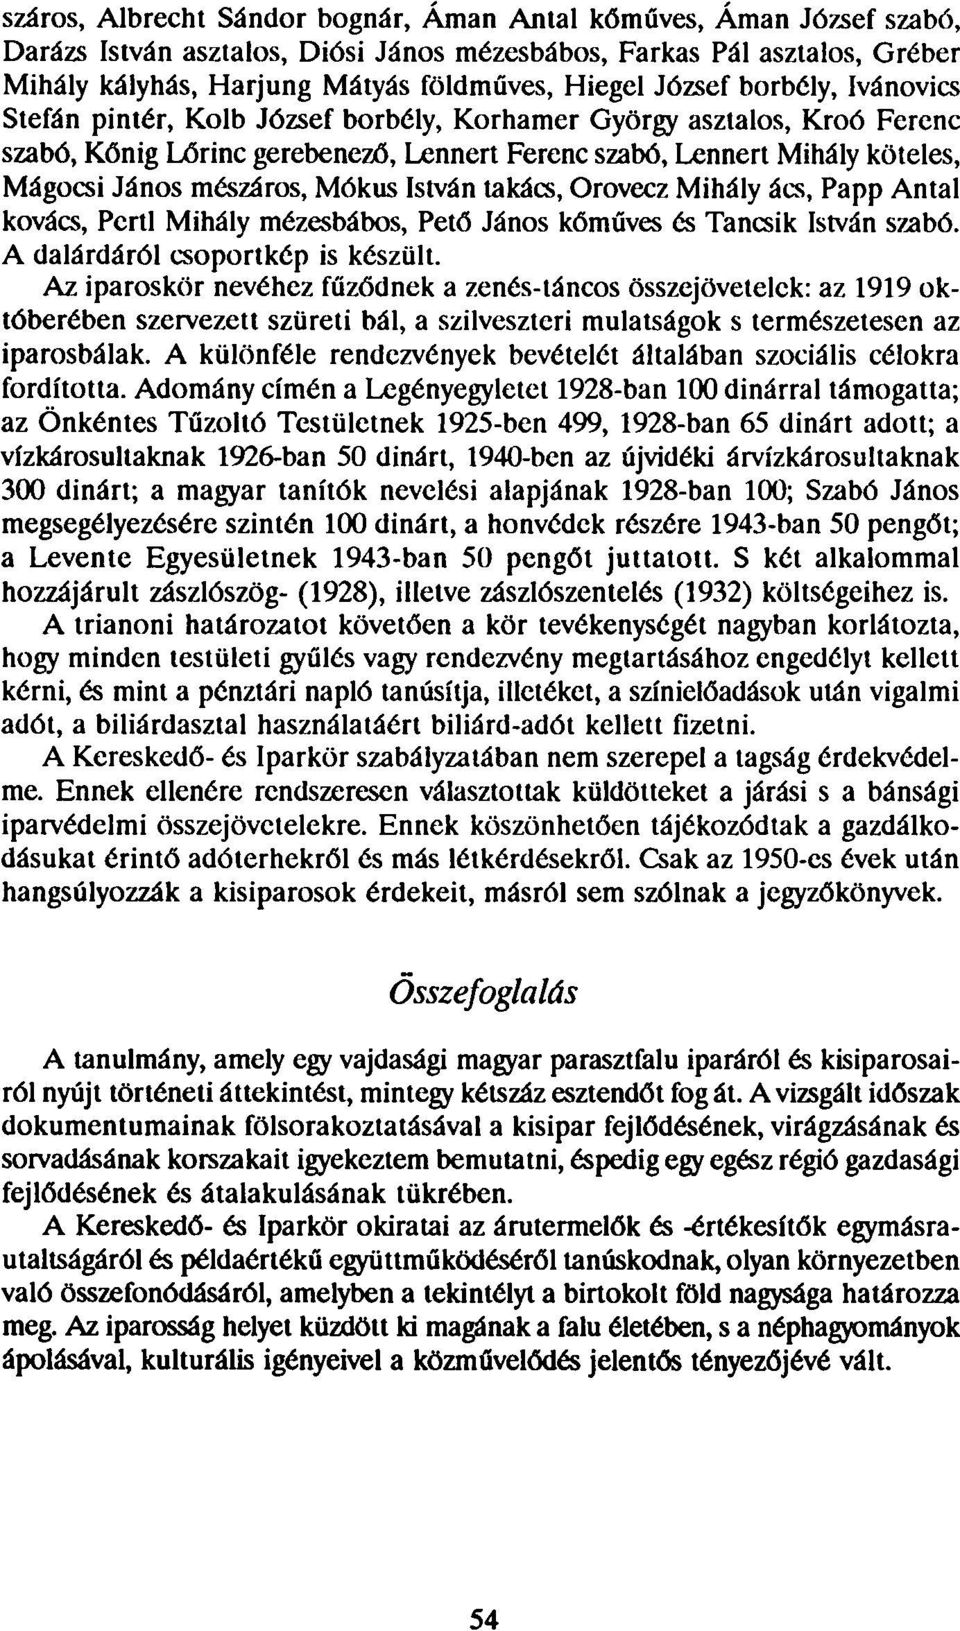 A DOROSZLÓI KISIPAROSOK - PDF Ingyenes letöltés